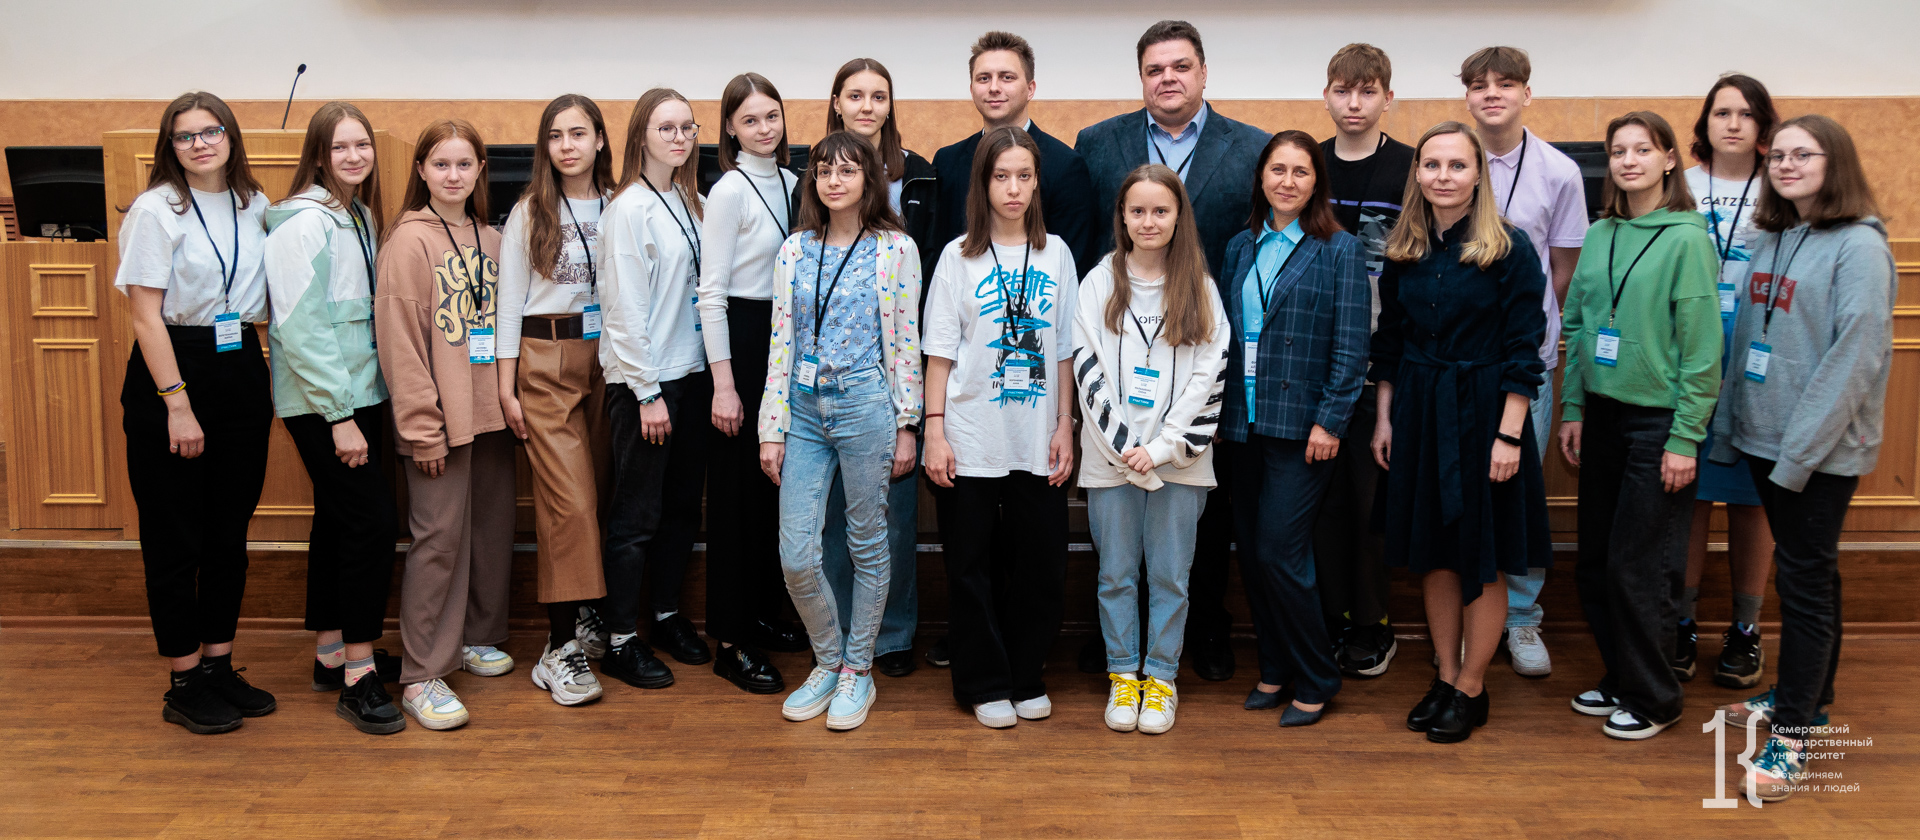 Одарённые школьники Кузбасса стали участниками интенсивной профильной смены «Проекты по прикладной экологии» в КемГУ